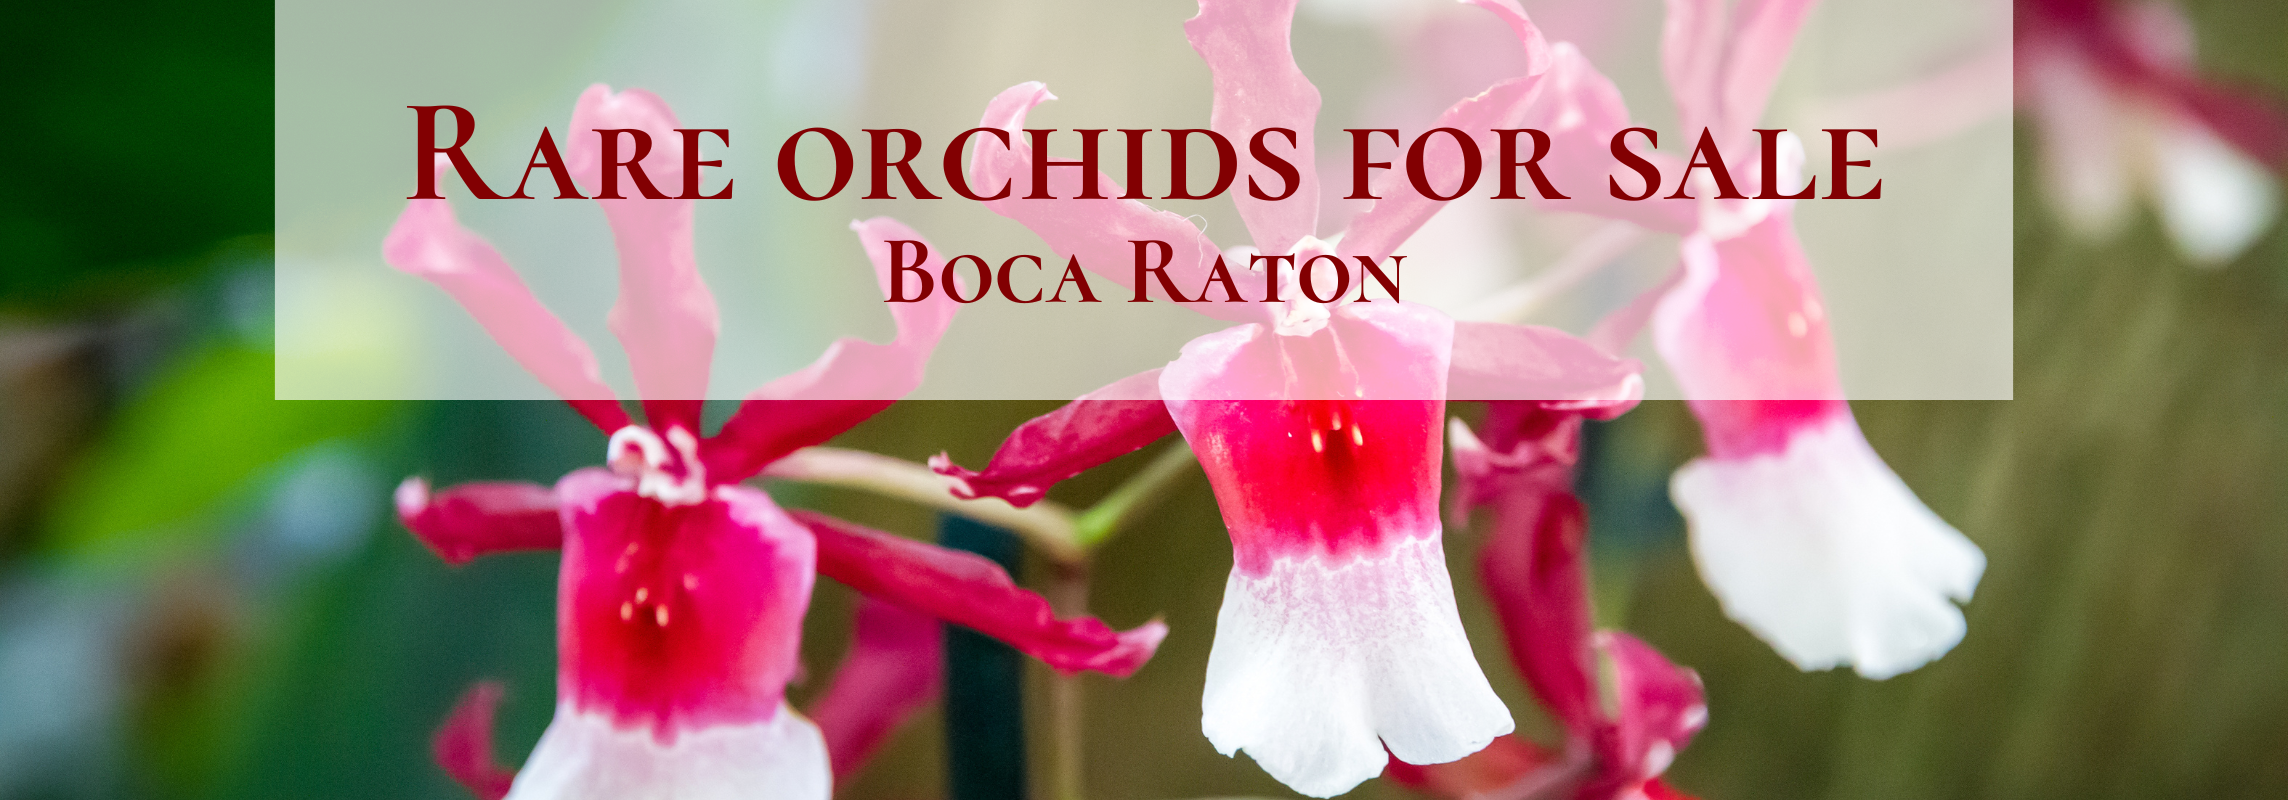 rare orchids for sale boca raton